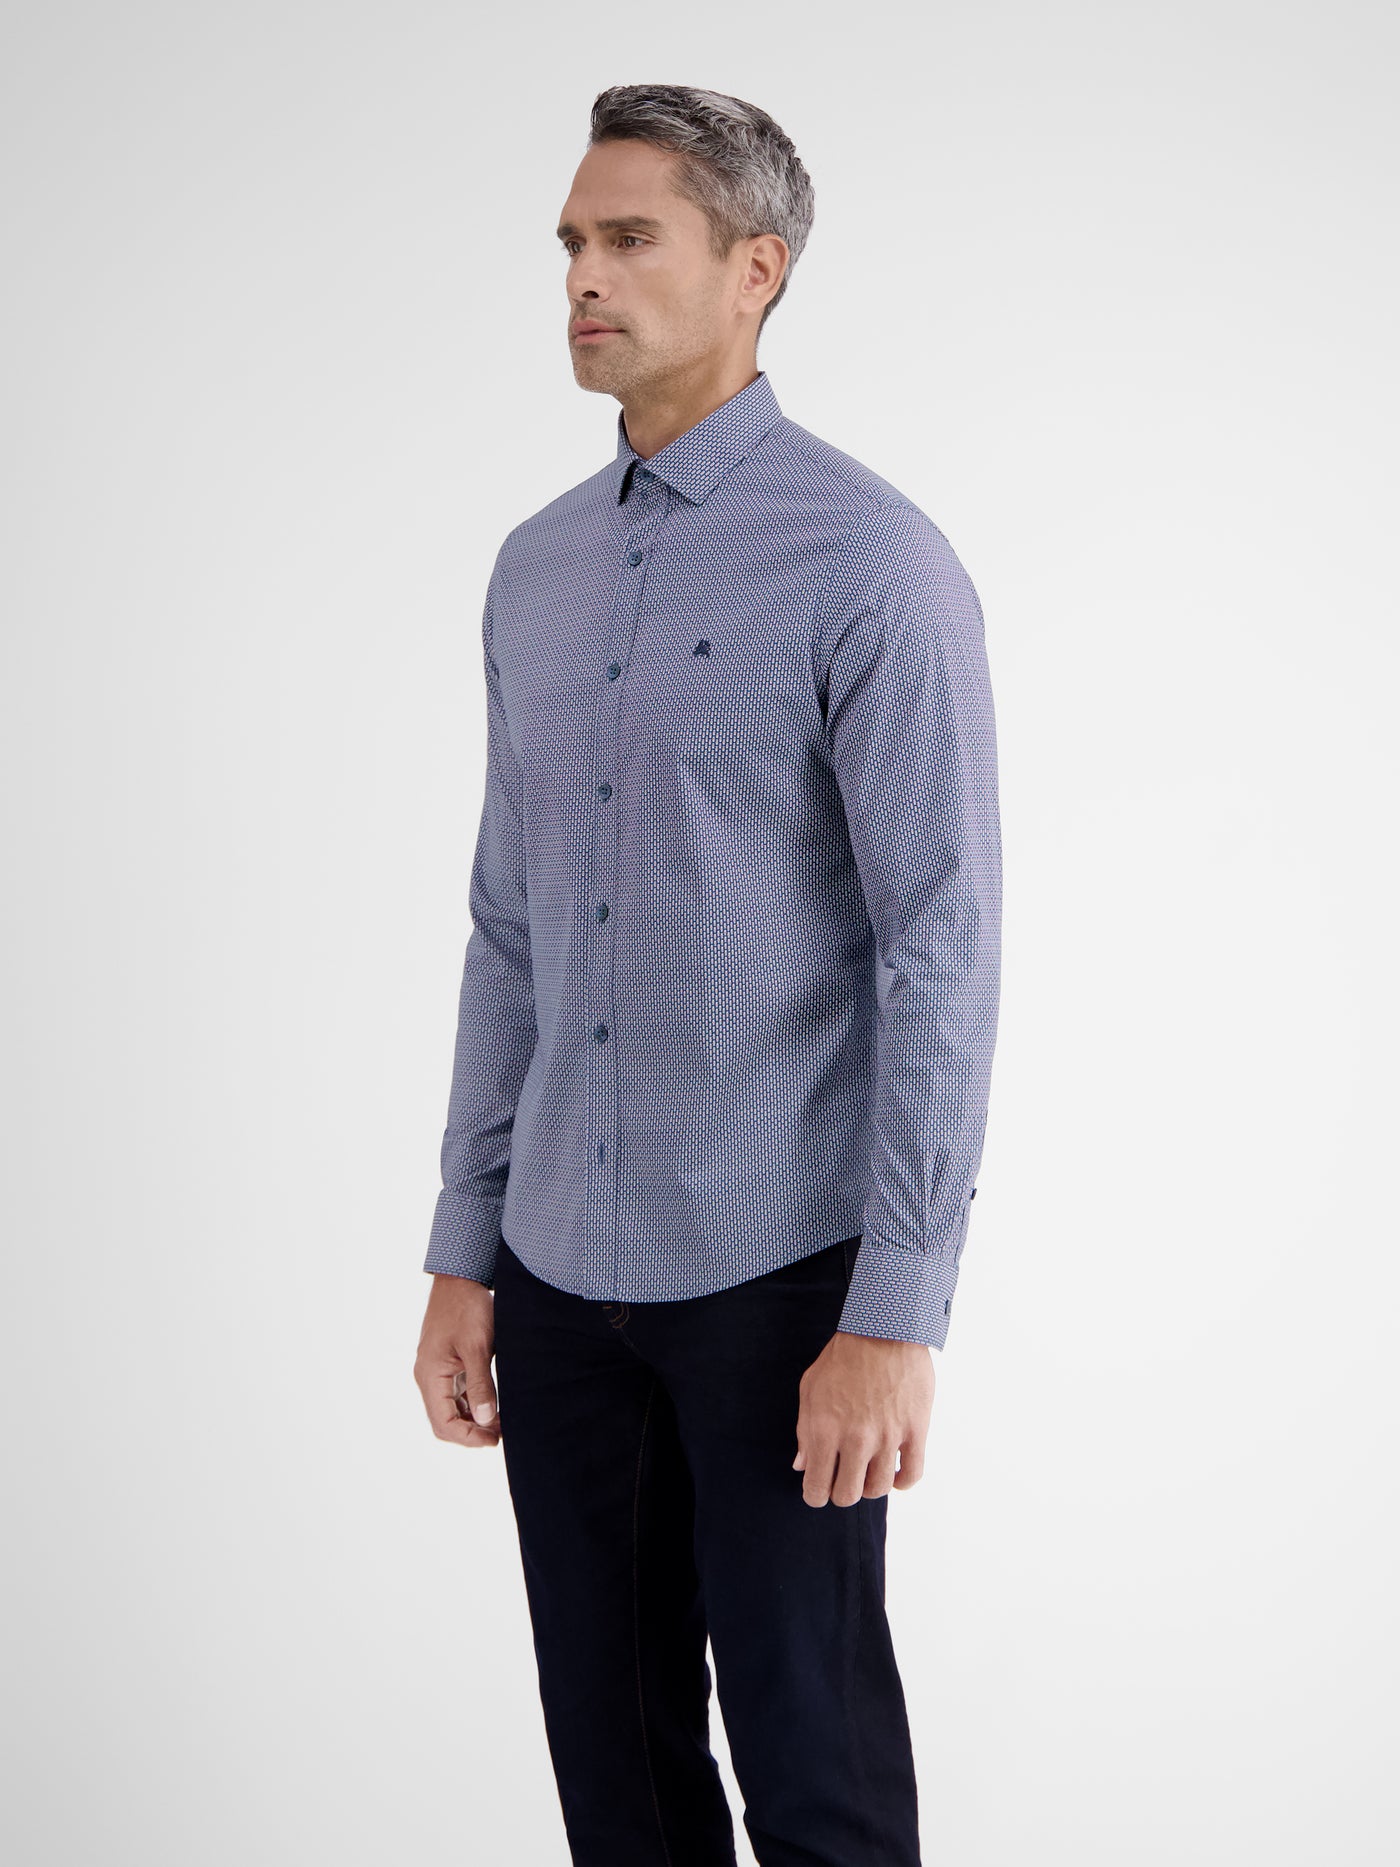 Poplin shirt with shark collar, dot print